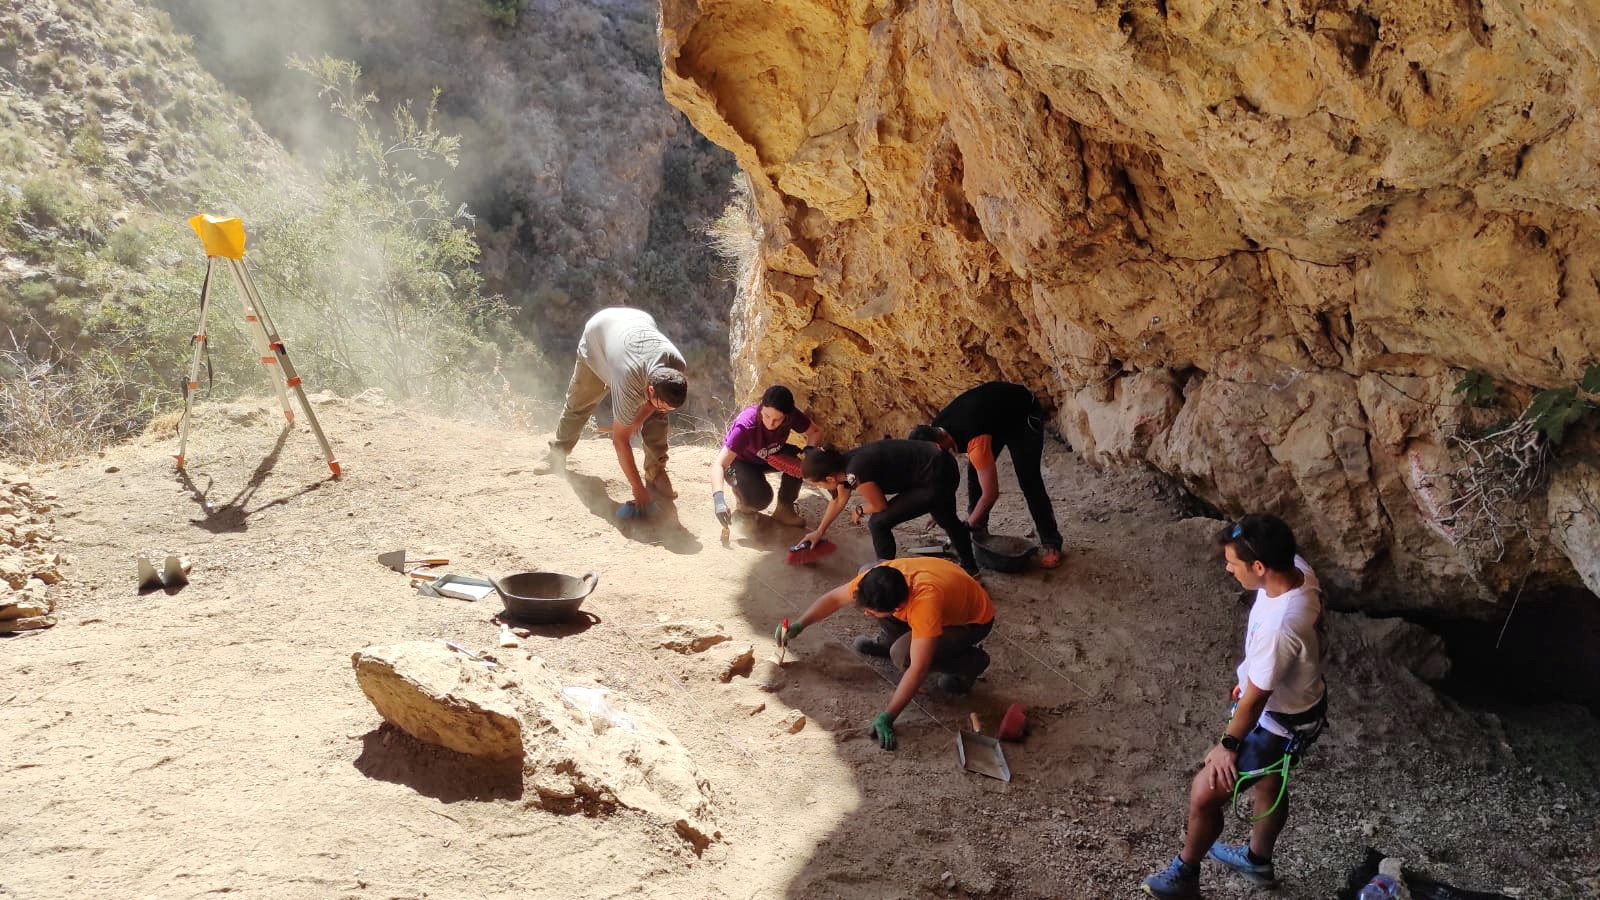 La I campaña de excavación en la Cueva de los Murciélagos la situará en el contexto internacional de las investigaciones sobre prehistoria